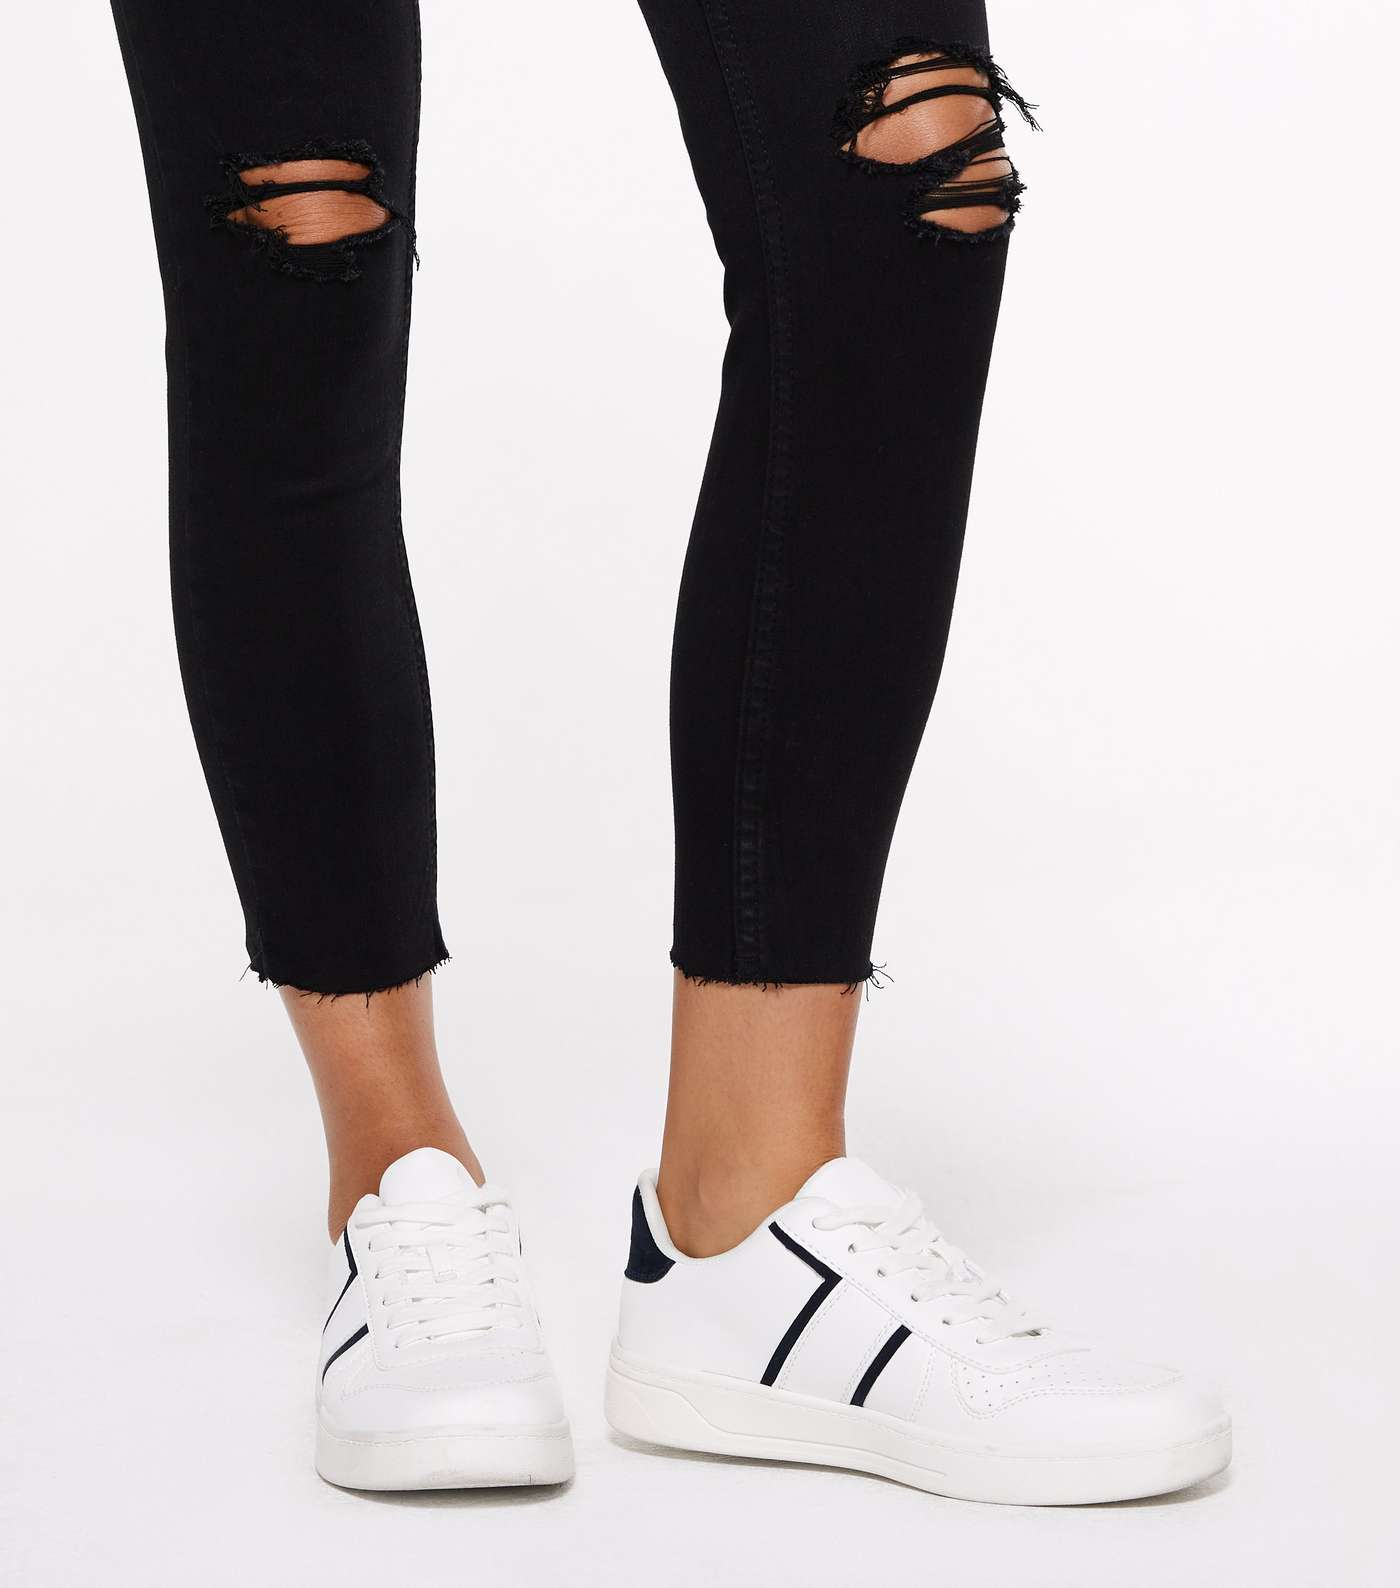 Petite Black 'Lift & Shape' Ripped Jenna Skinny Jeans Image 4